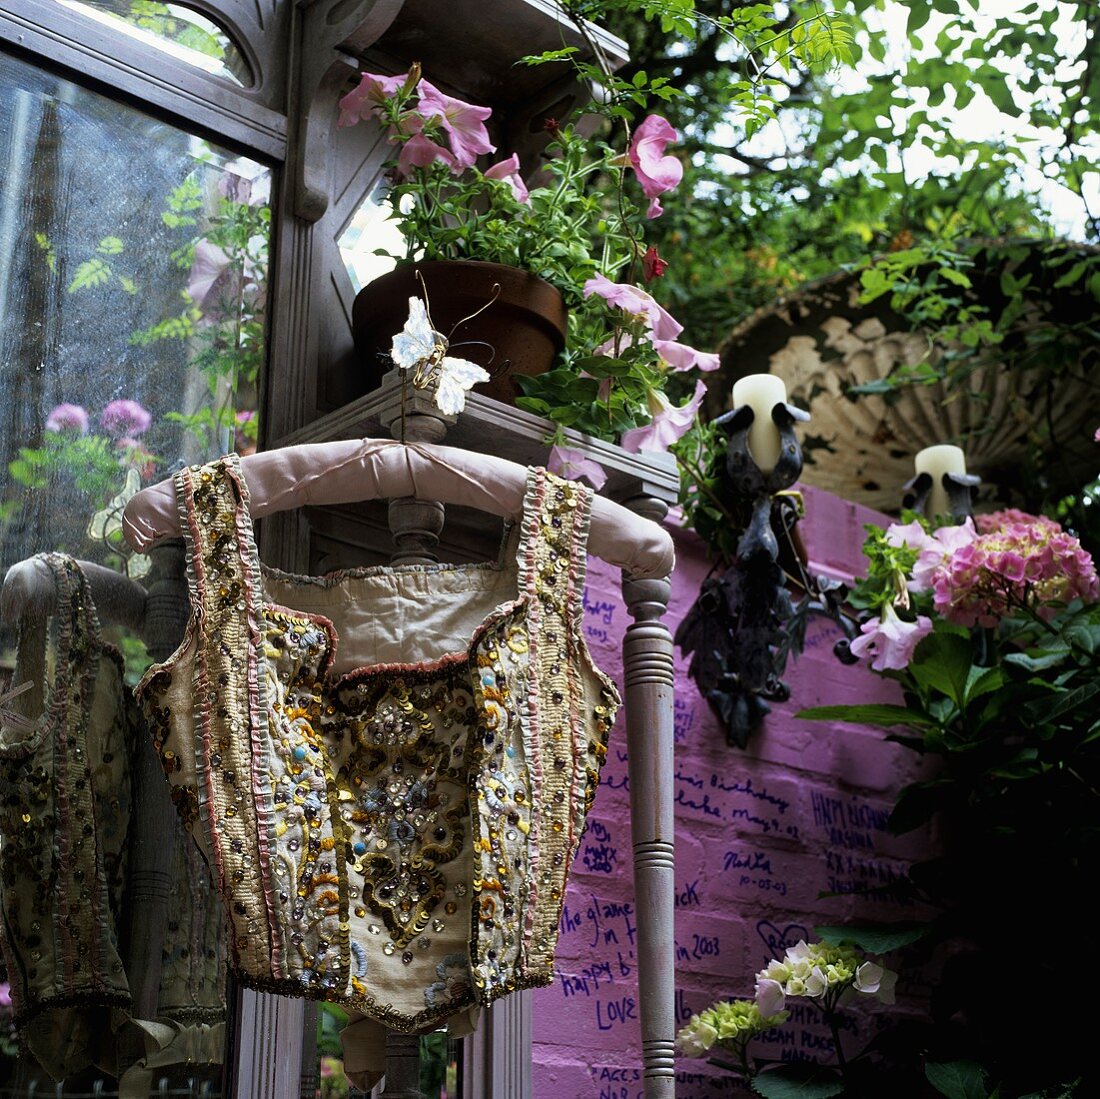 Paillettenweste auf Kleiderbügel vor rosa Wand mit Blumentöpfen